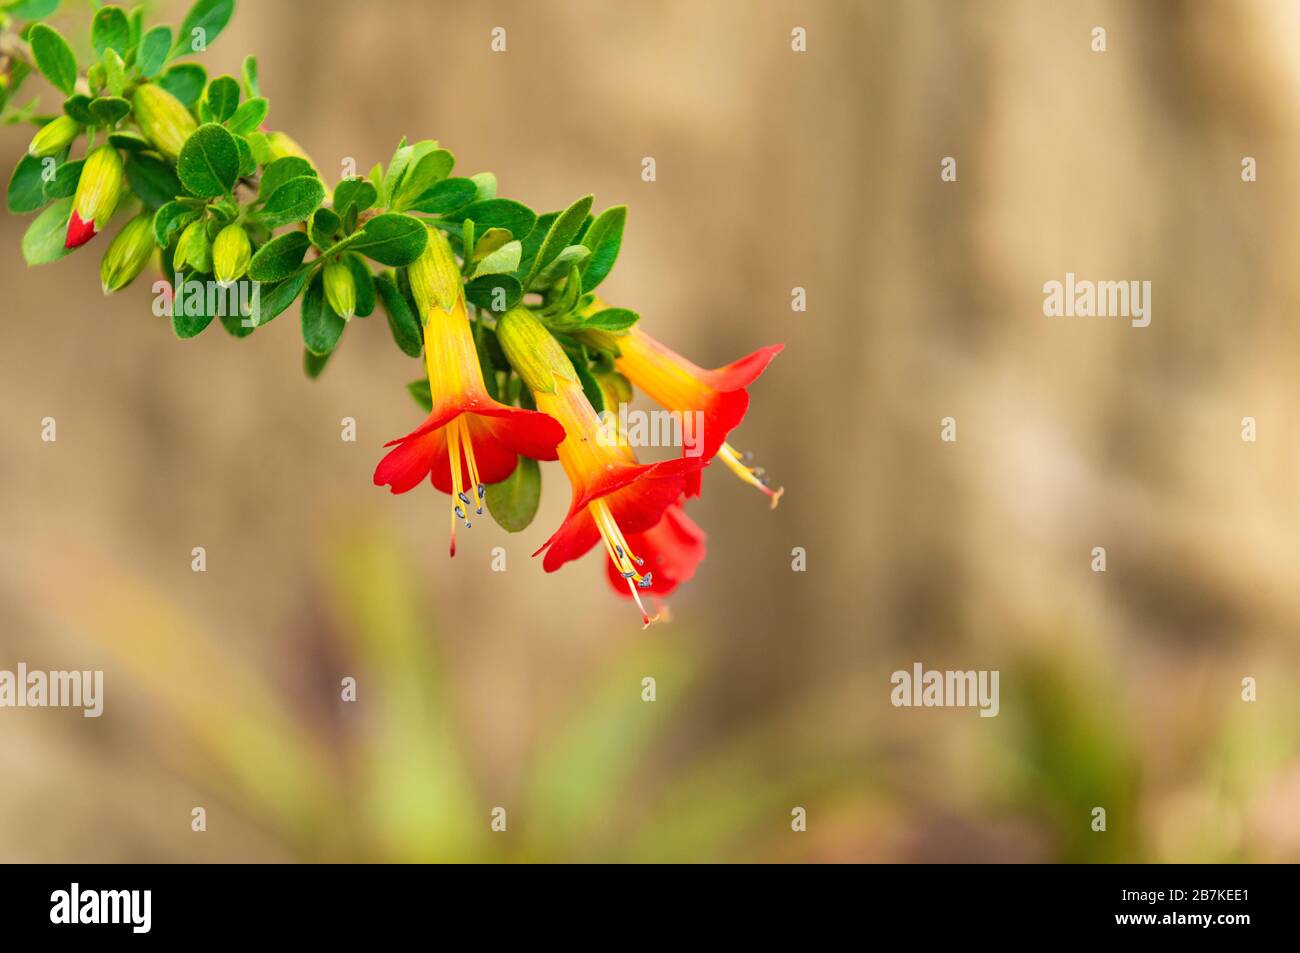 Die dreifarbige (rot, gelb, grün) Cantuta (Cantua buxifolia) ist die Nationalblume Boliviens und kommt in der Anden-Gebirgskette vor. Stockfoto